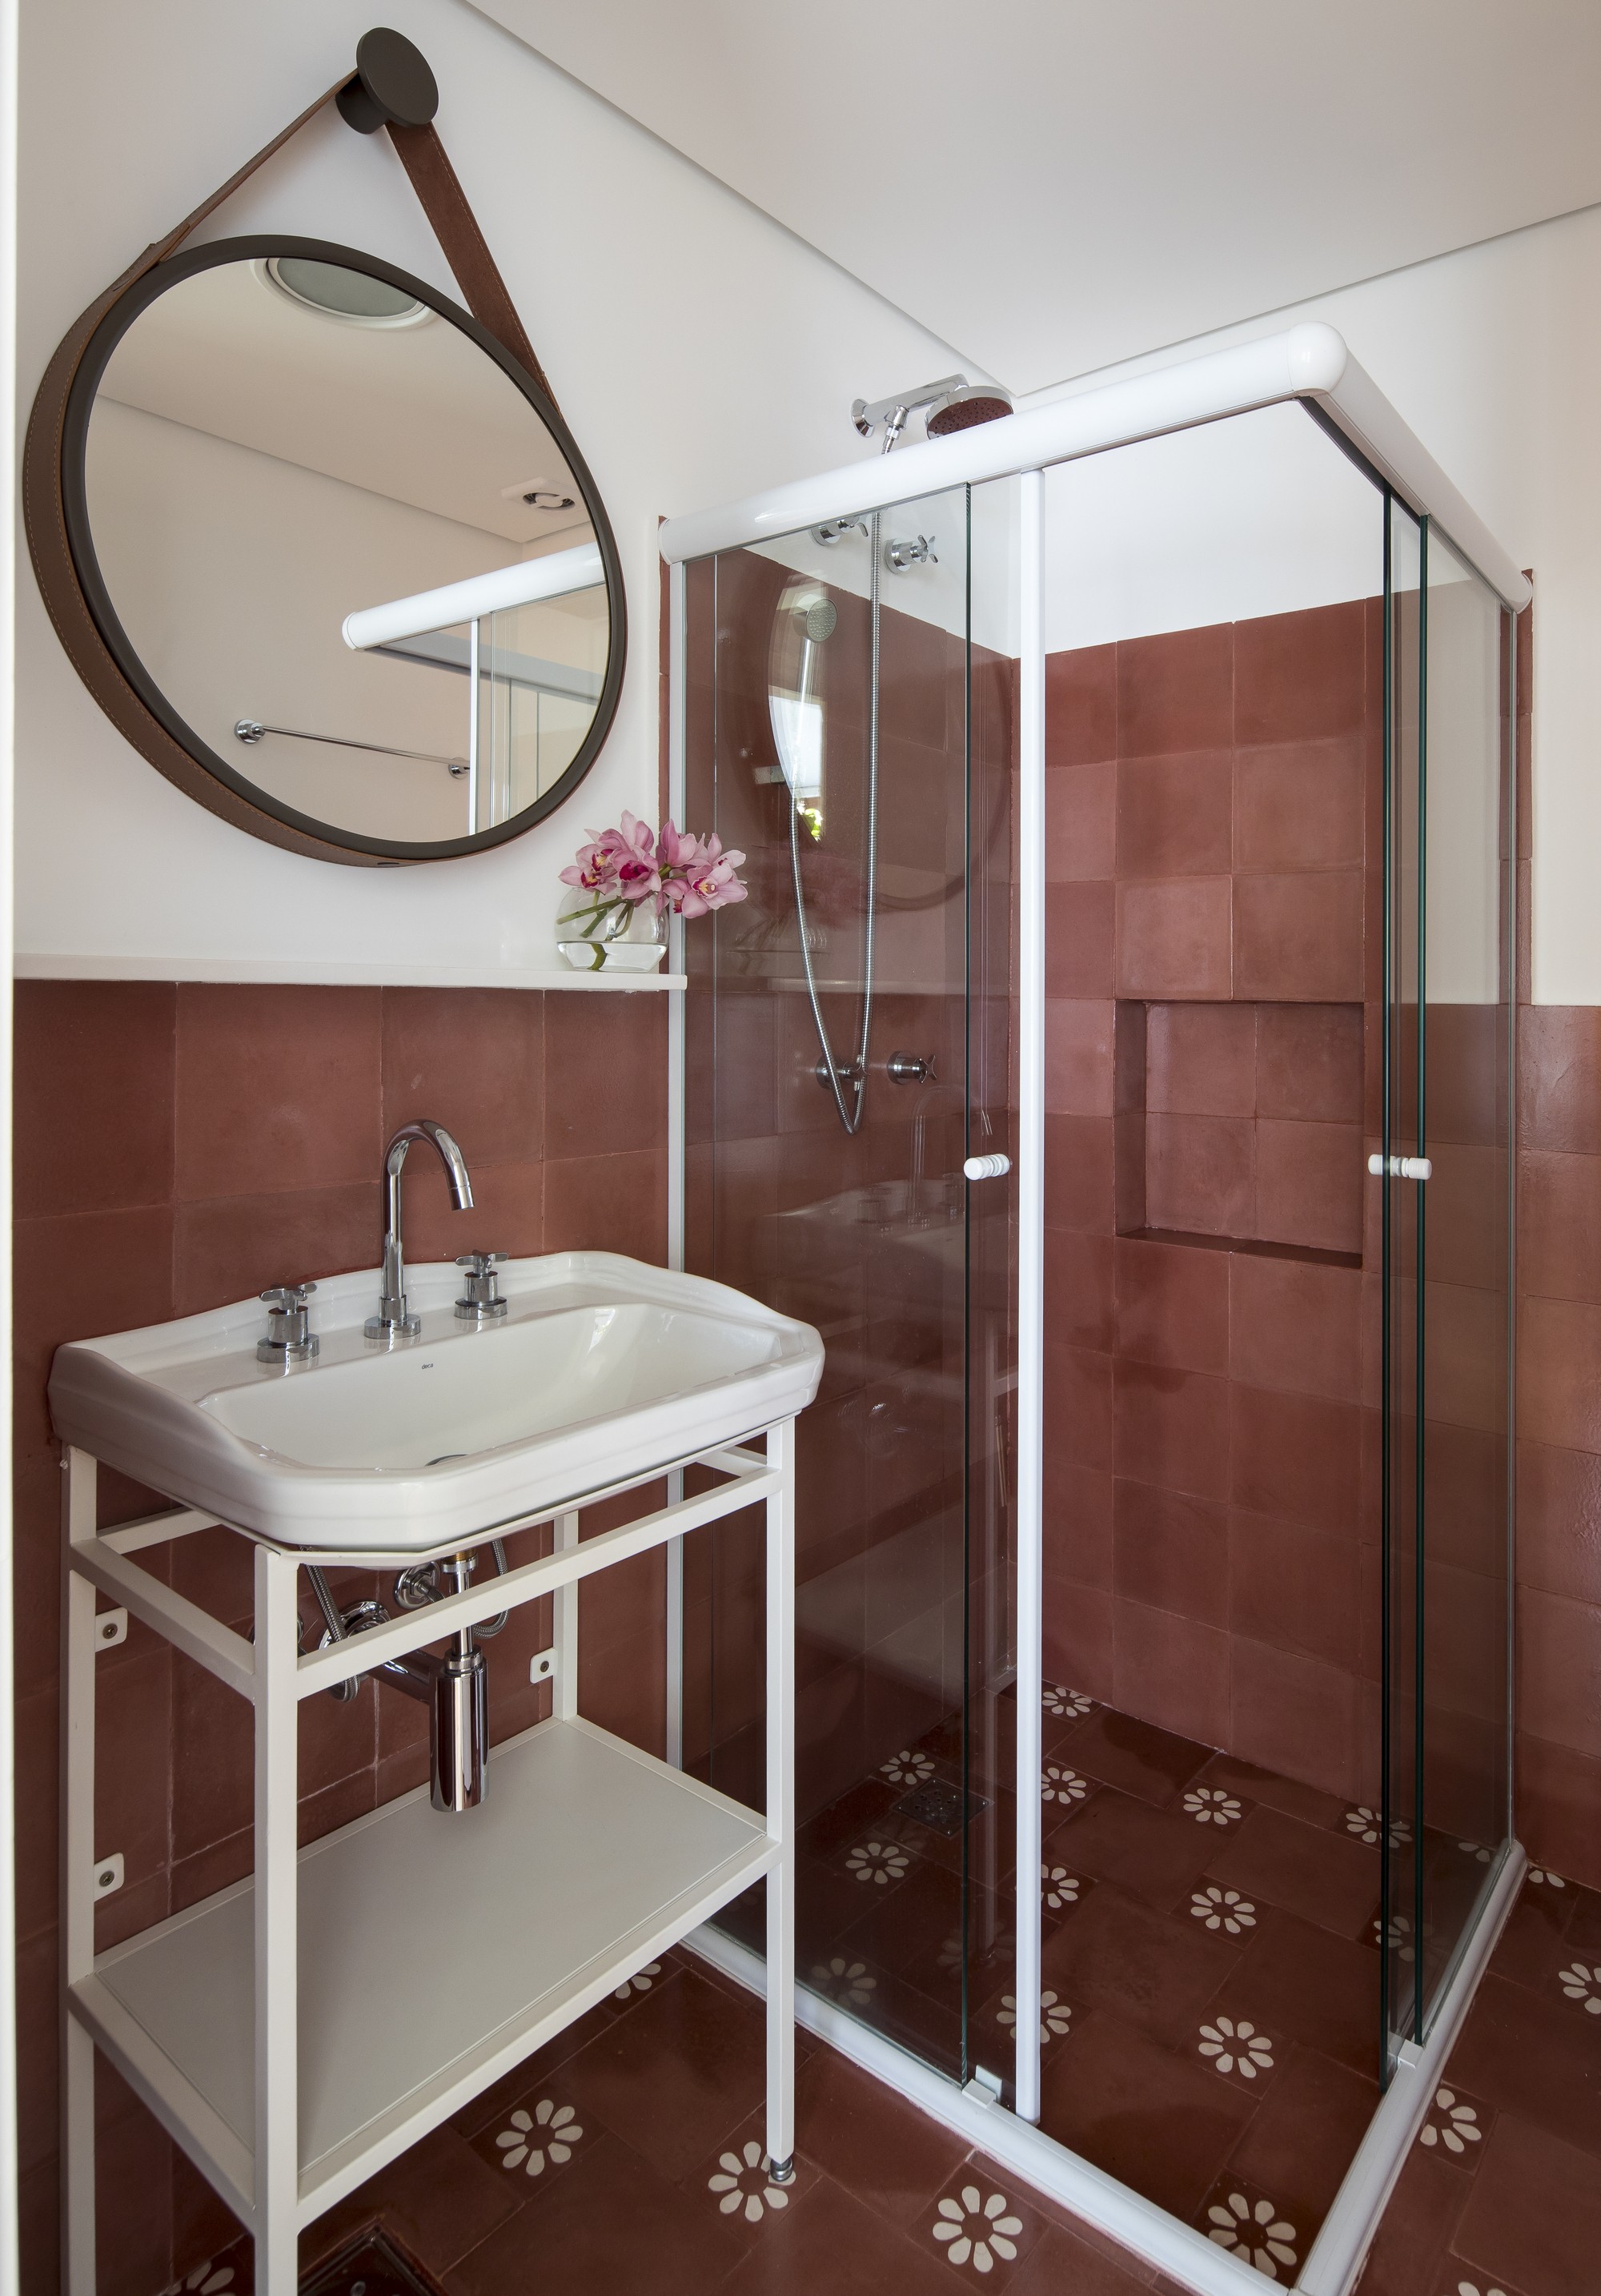 Décor do dia: banheiro com espelho redondo e pia de serralheria (Foto: Maíra Acayaba)